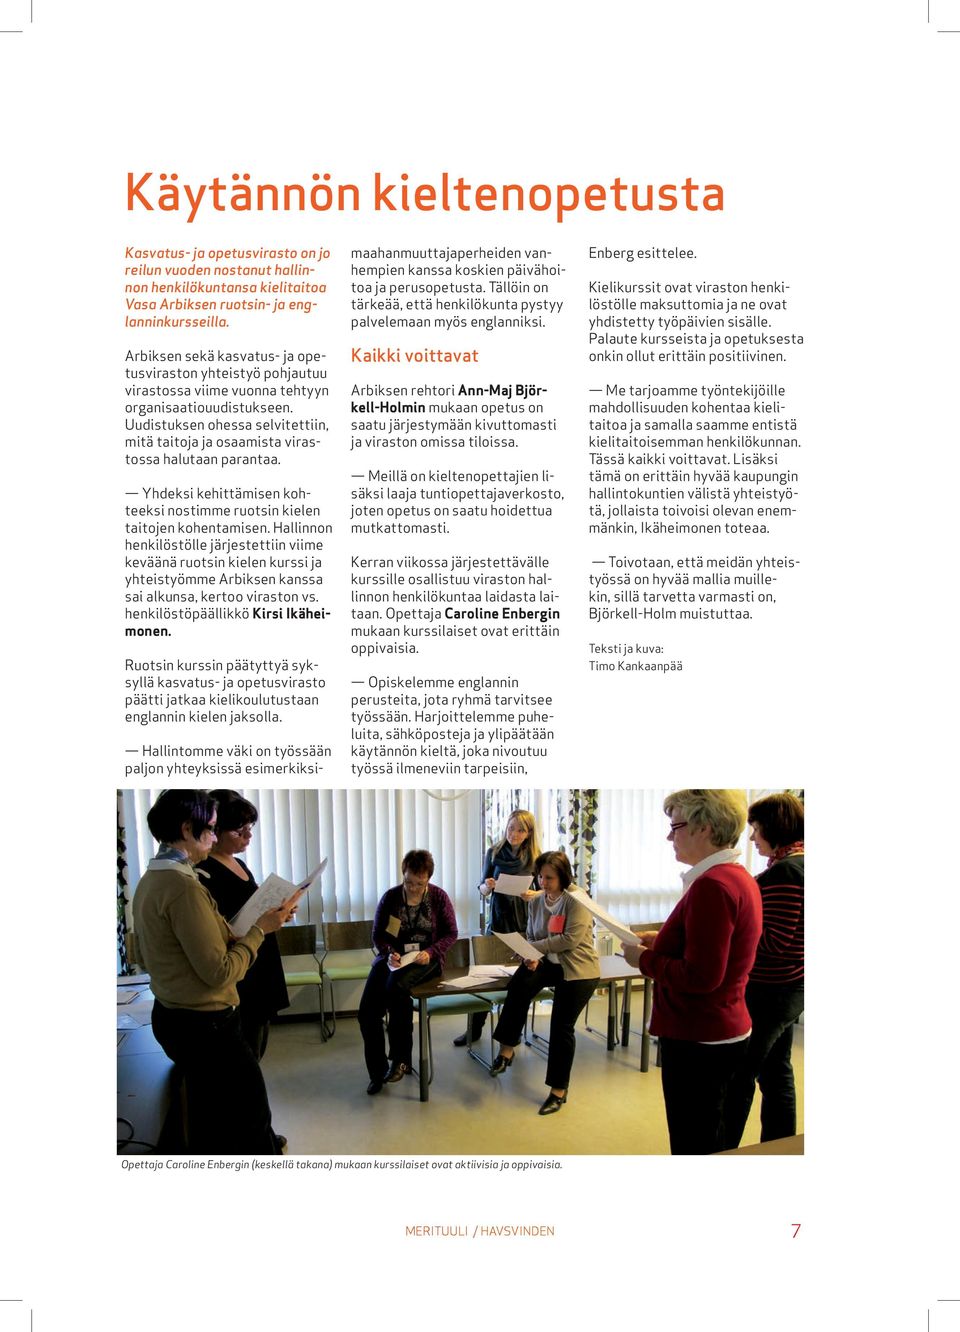 Uudistuksen ohessa selvitettiin, mitä taitoja ja osaamista virastossa halutaan parantaa. Yhdeksi kehittämisen kohteeksi nostimme ruotsin kielen taitojen kohentamisen.